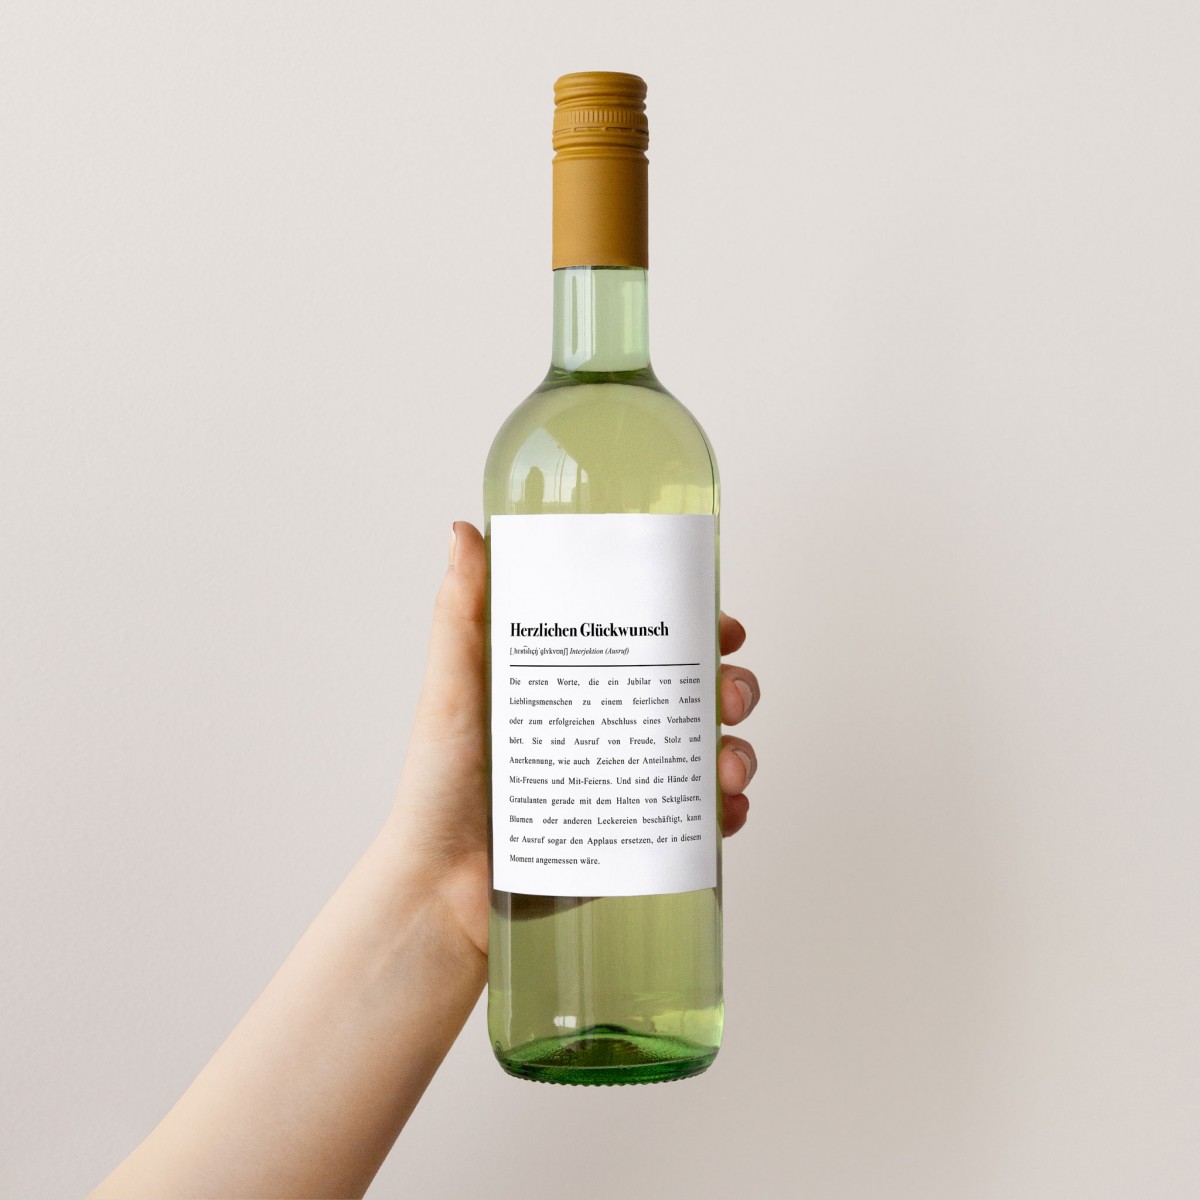 Etikett für Weinflaschen: "Herzlichen Glückwunsch" Definition